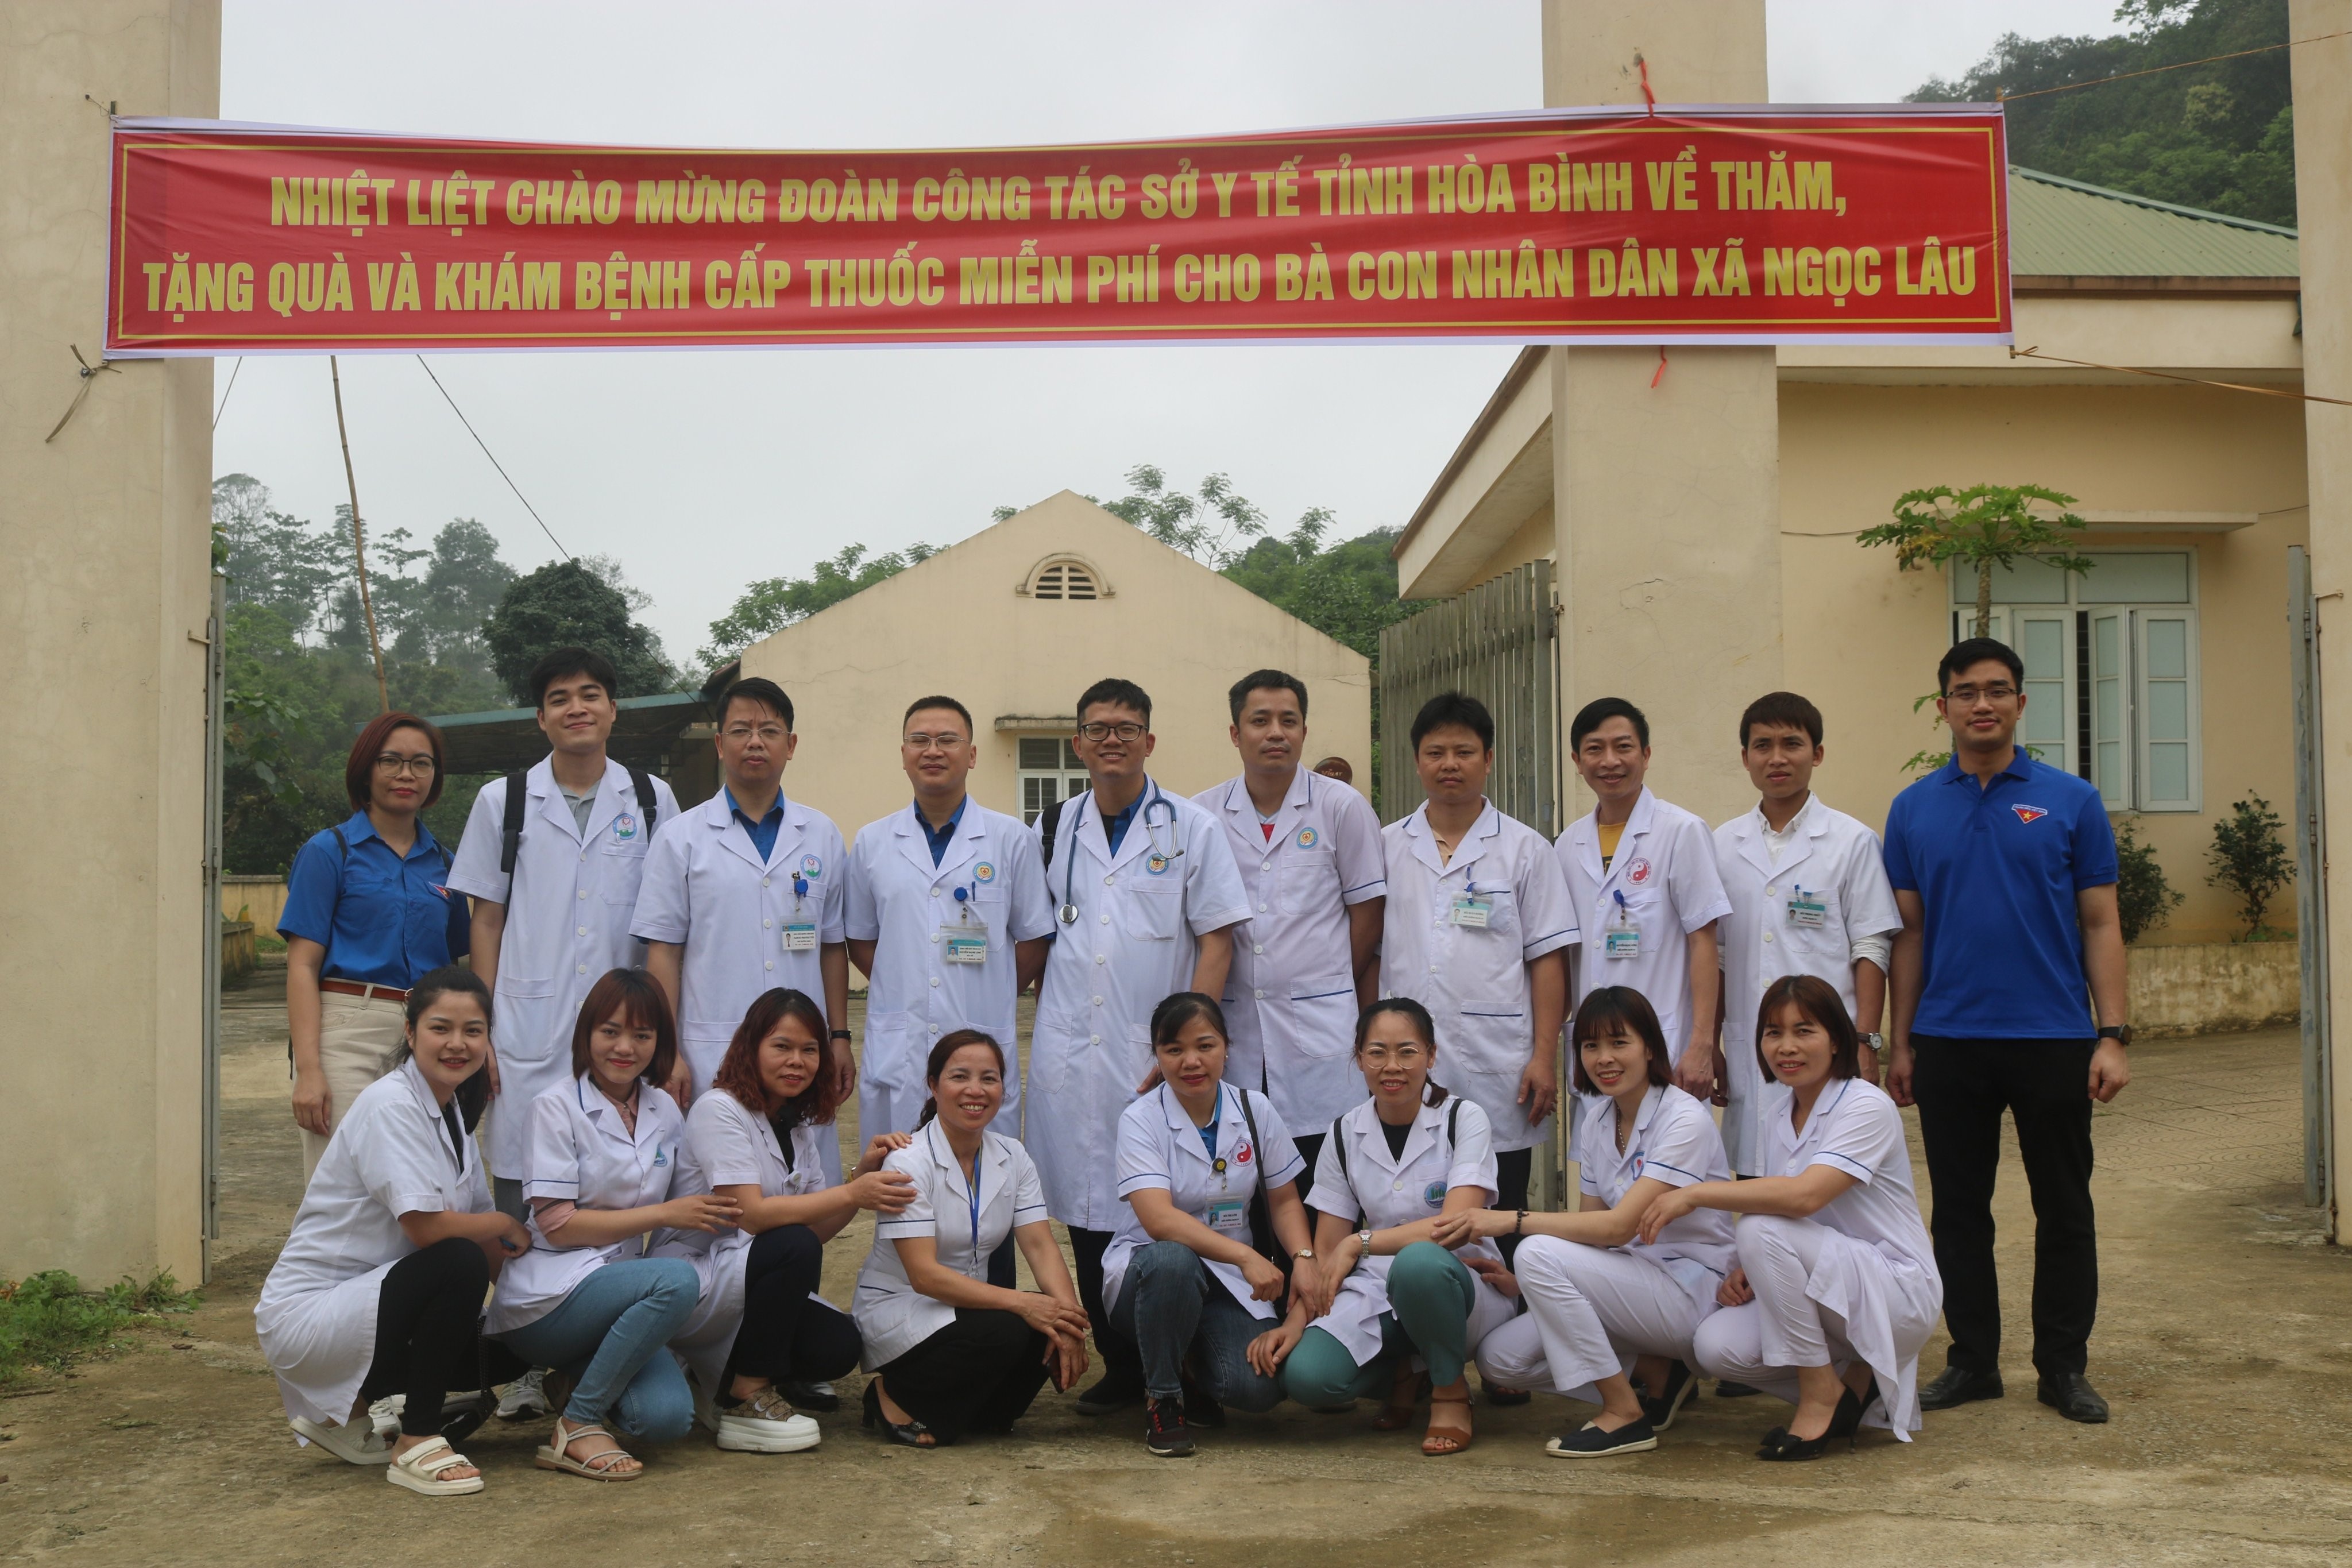  Đoàn thanh niên Bệnh viện Đa khoa tỉnh Hoà Bình khám tình nguyện tại hai xã Ngọc Sơn, Ngọc Lâu